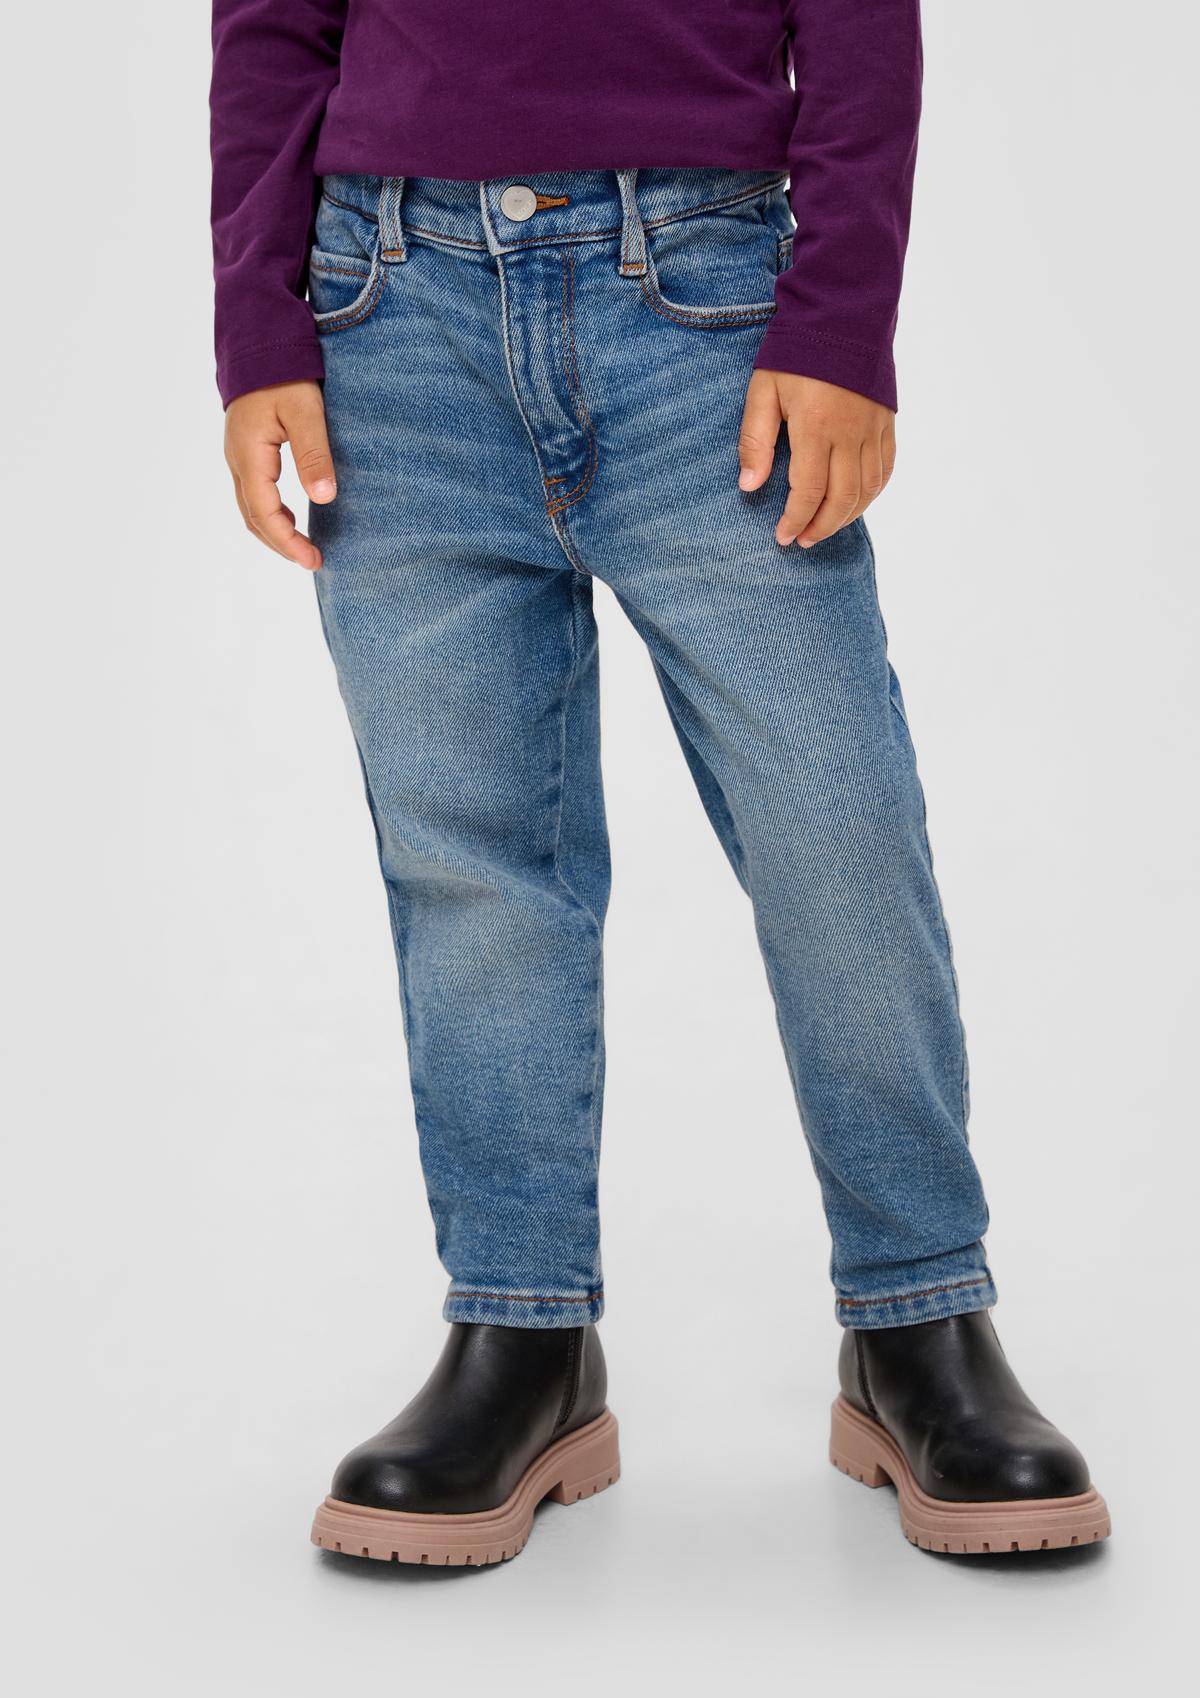 Pantalon en jean